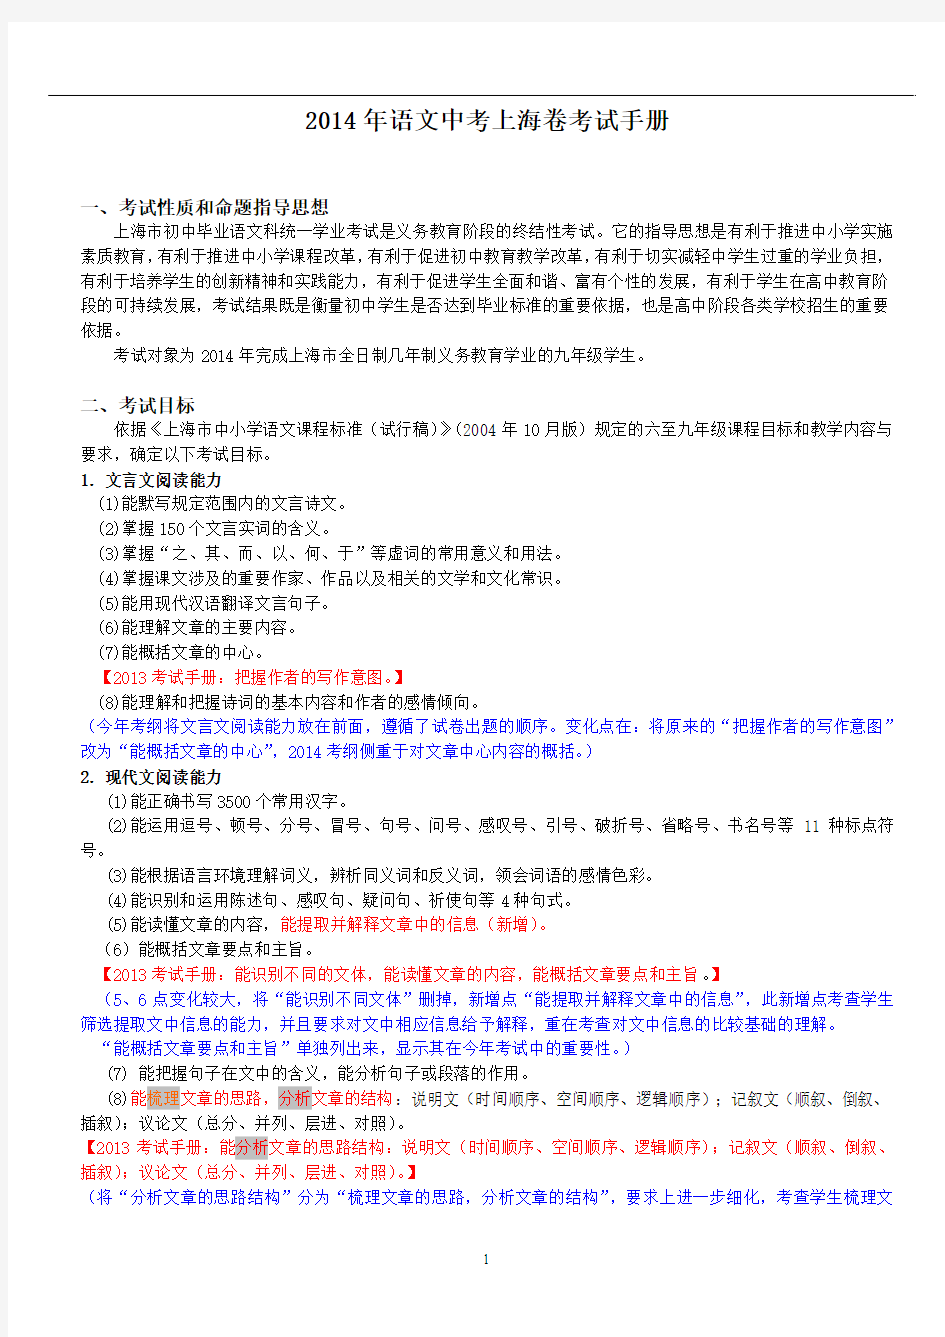 2014年语文中考上海卷考试手册及变化分析[1]